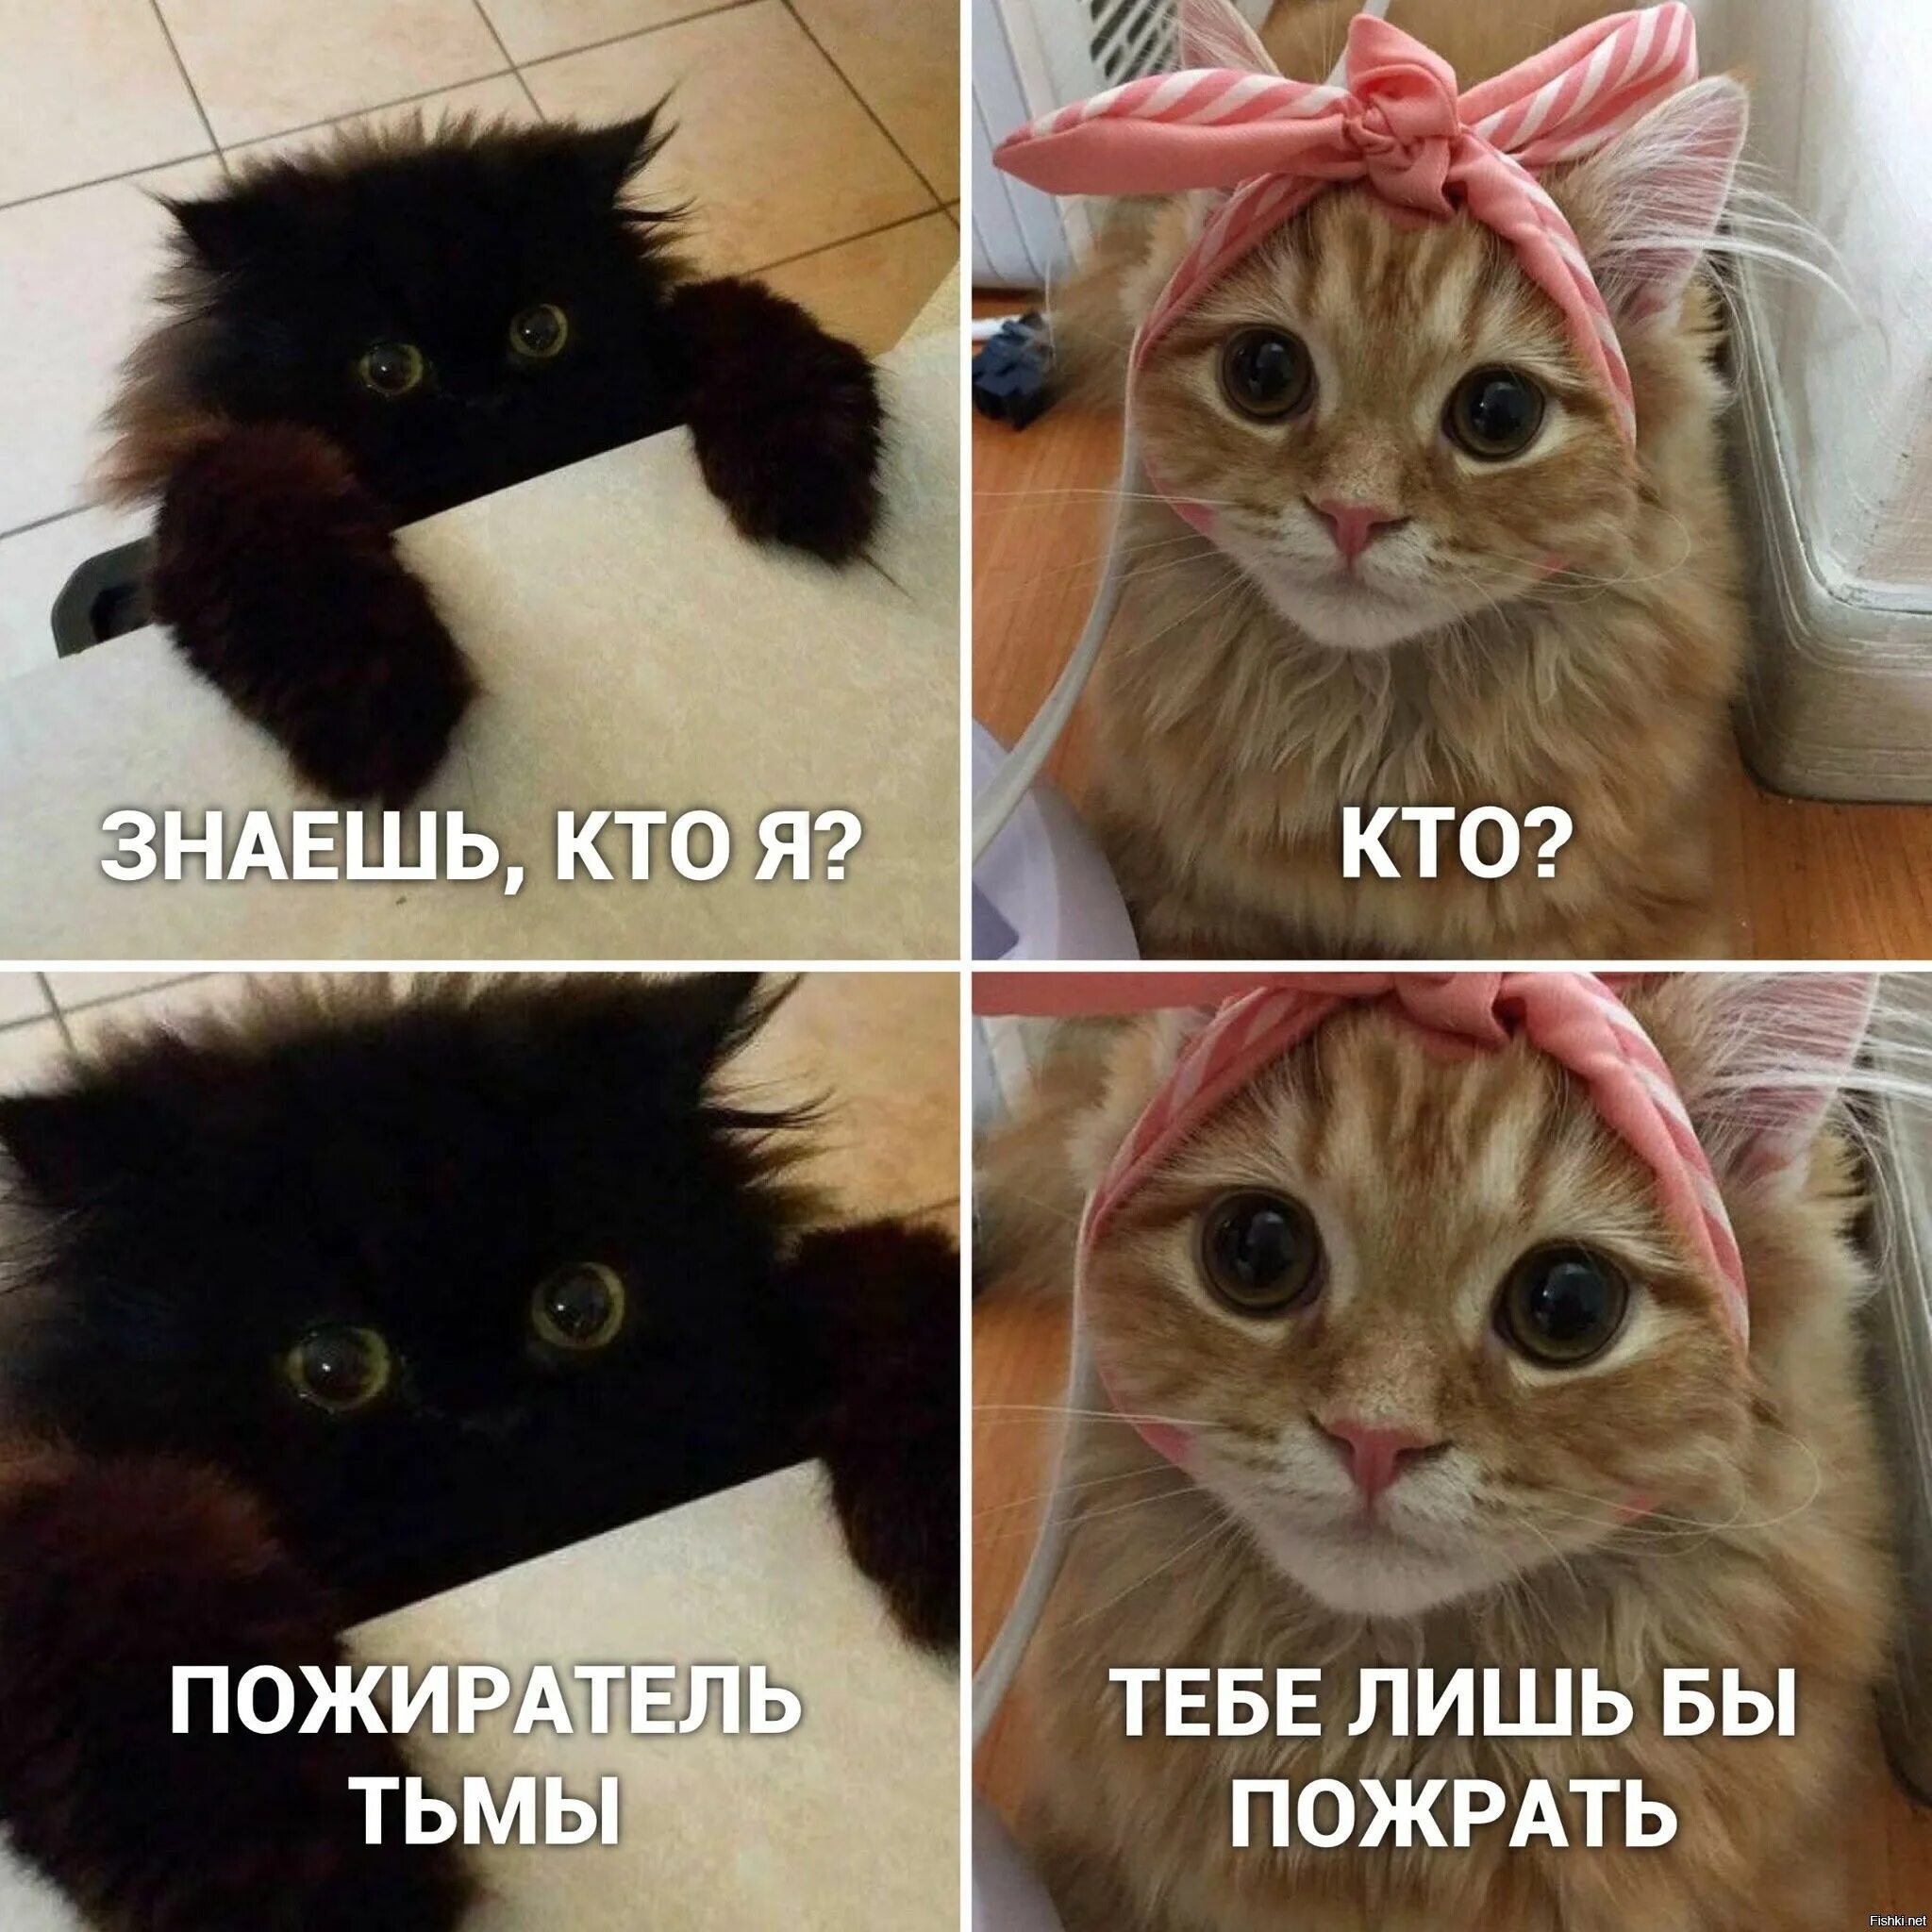 Скинь смешное. Мемы с котами. Мемы про котов. Мемы с кокотам. Смешные мемы про котов.